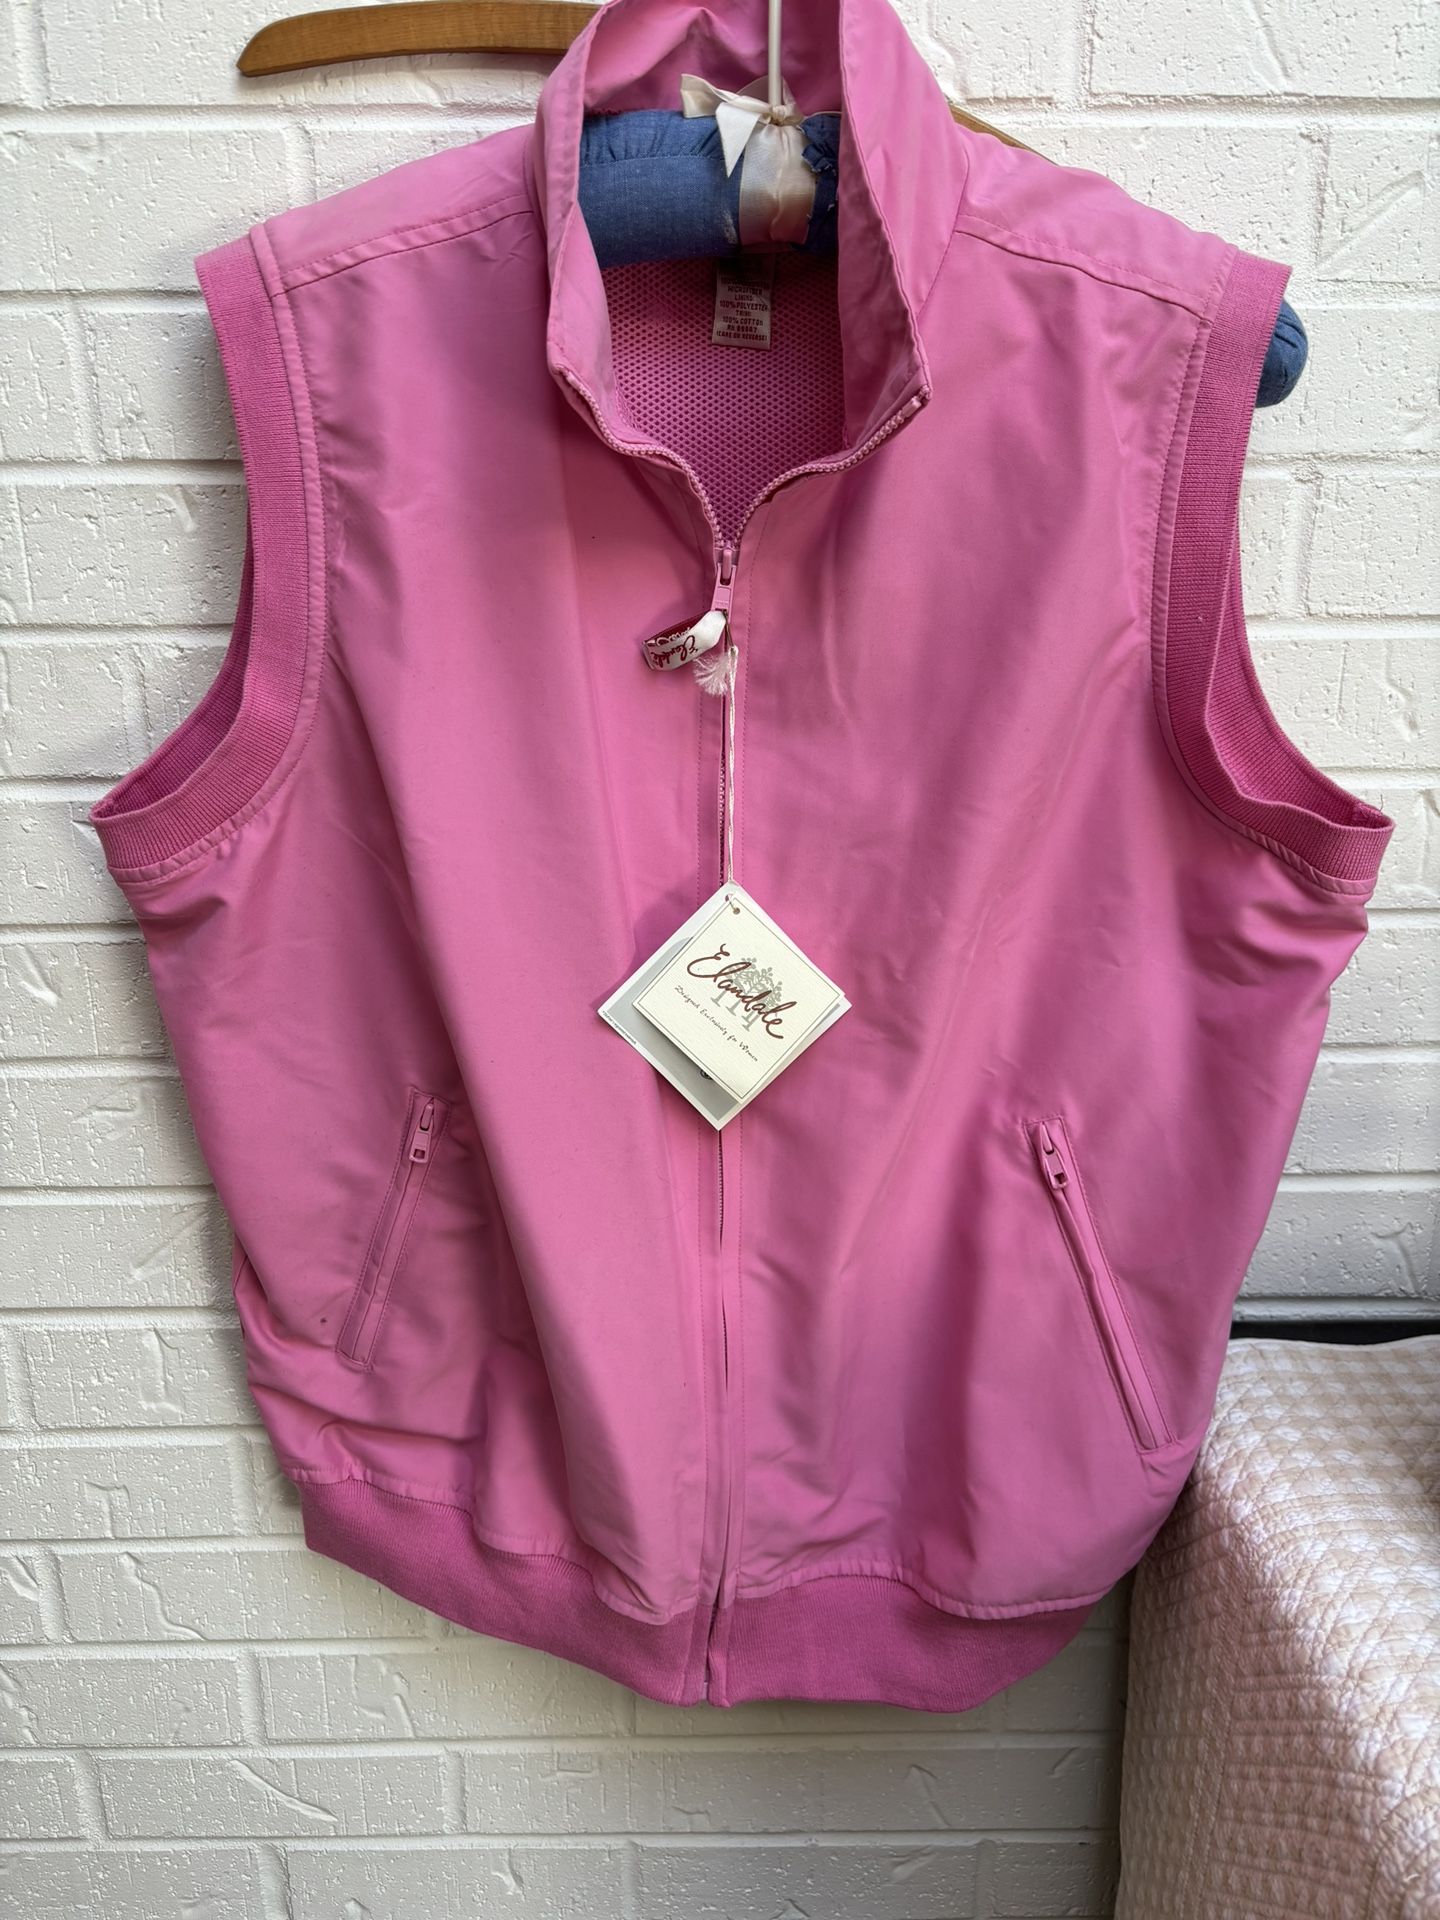 Elandale Women’s NWT Azalea Pink Sleeveless Vest Size L